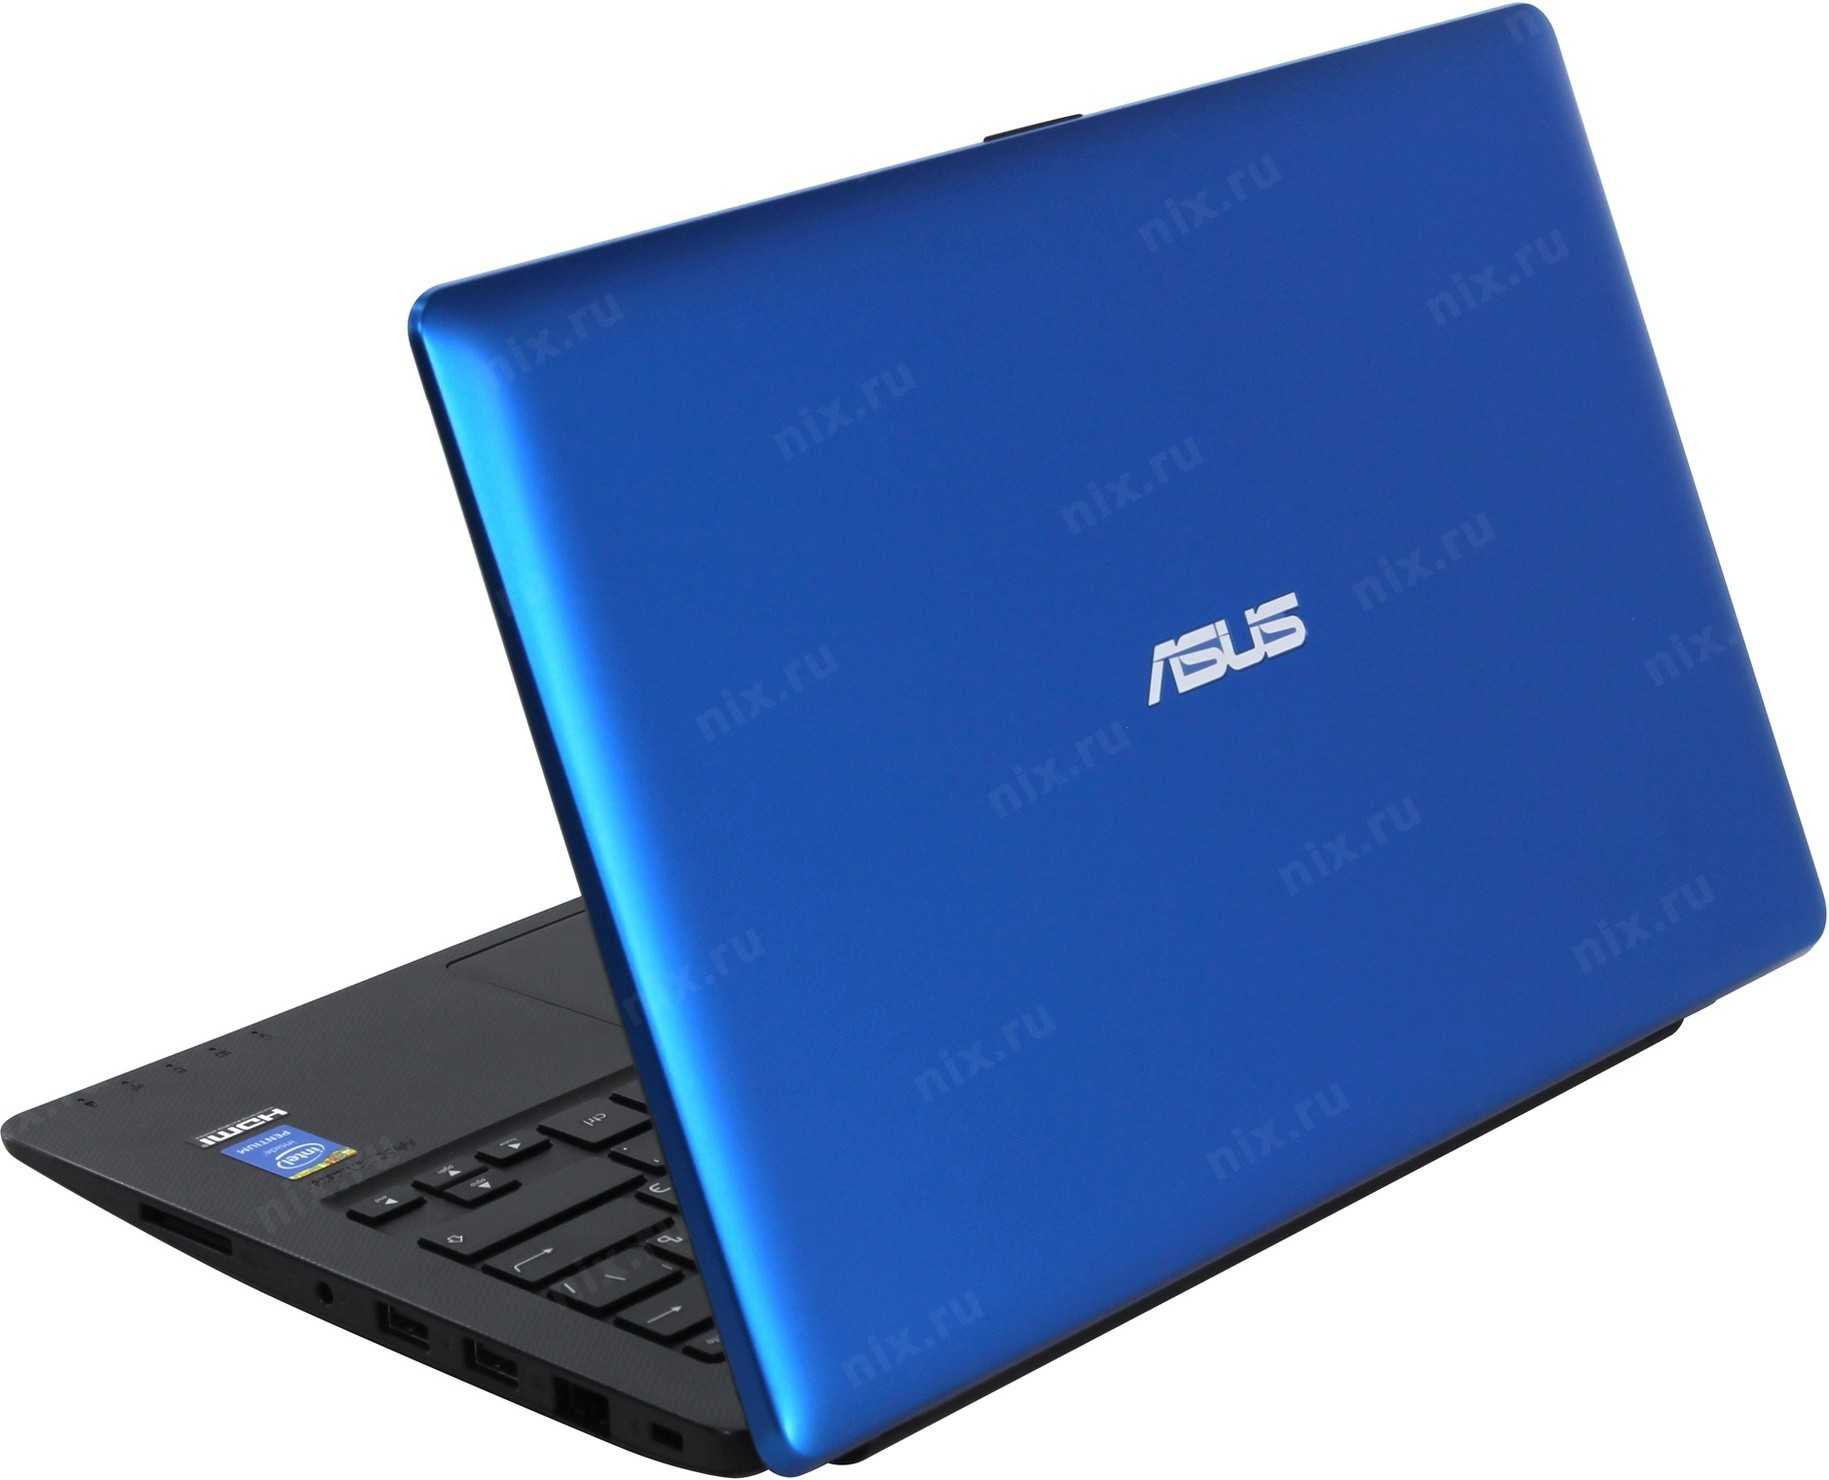 Ноутбук-планшет asus x200ma-ct090h — купить, цена и характеристики, отзывы